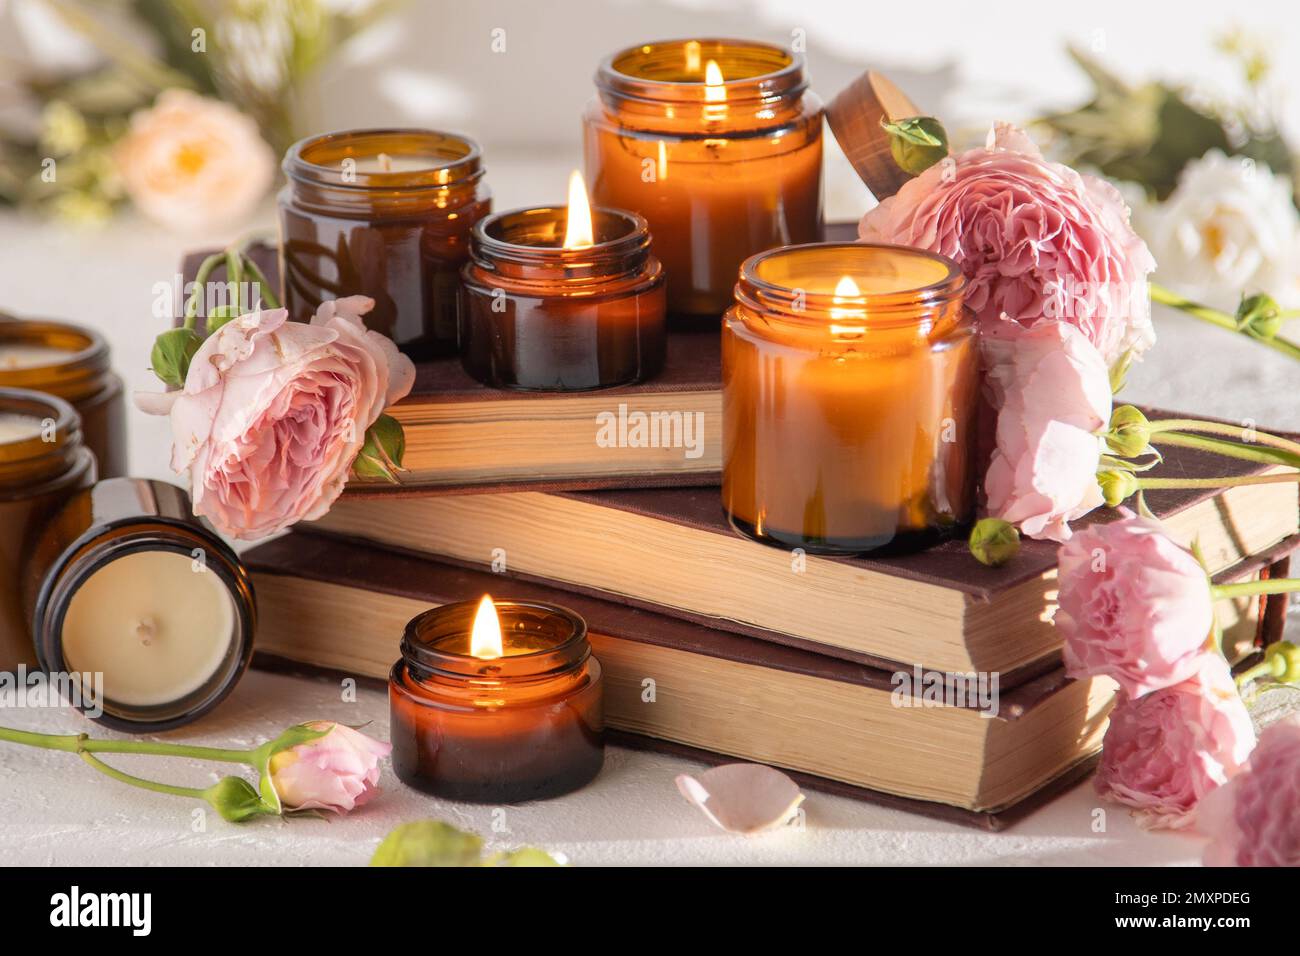 Un juego de velas aromáticas diferentes en tarros de vidrio marrón. Vela  hecha a mano perfumada. Las velas de soja se queman en un frasco.  Aromaterapia y relajarse en el spa y